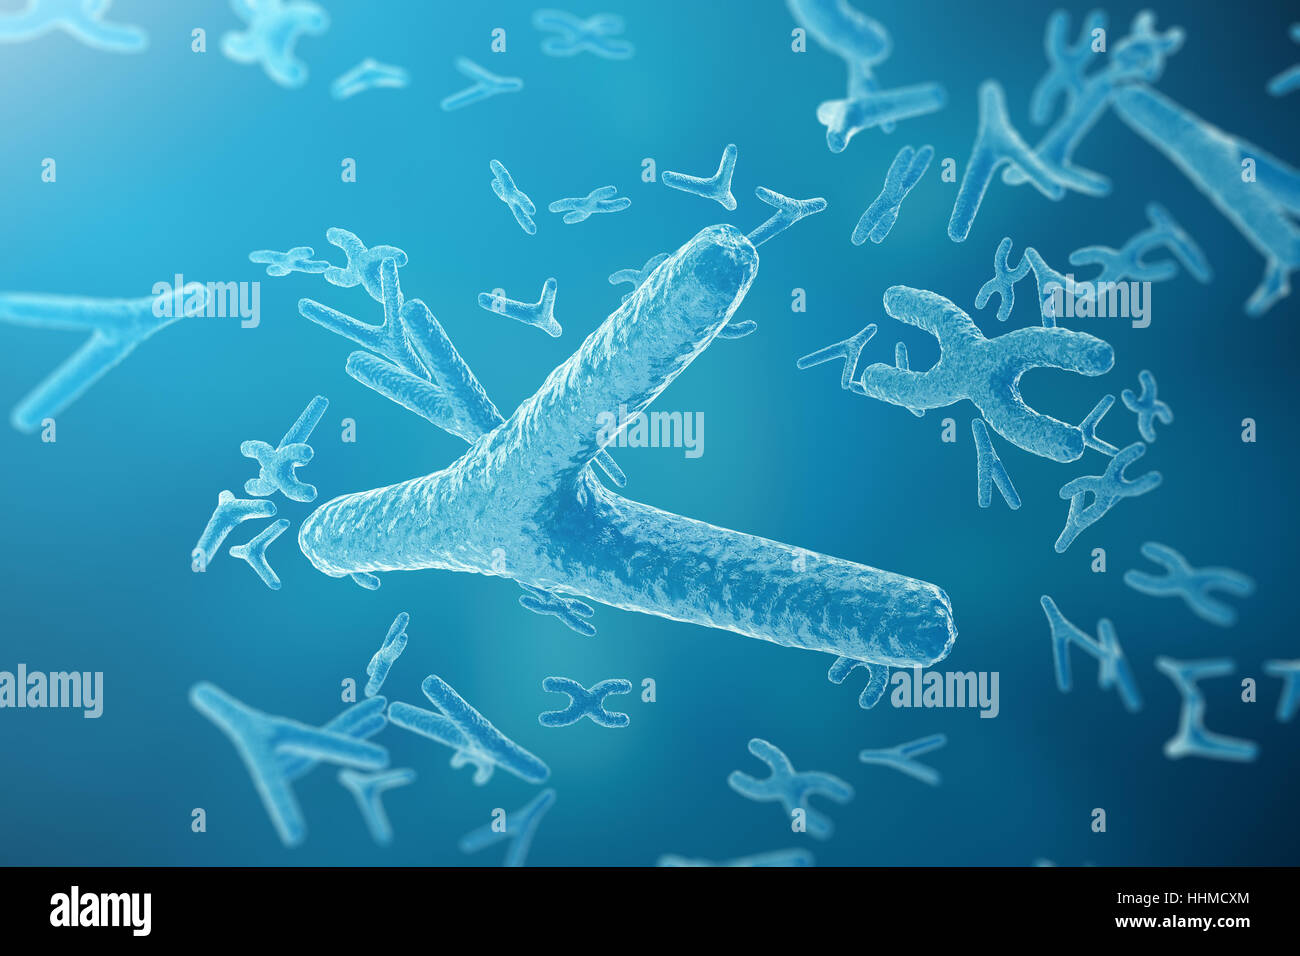 Arrière-plan scientifique sur les chromosomes. La vie et de la biologie, de la médecine concept scientifique avec effet focus, rendu 3D Banque D'Images